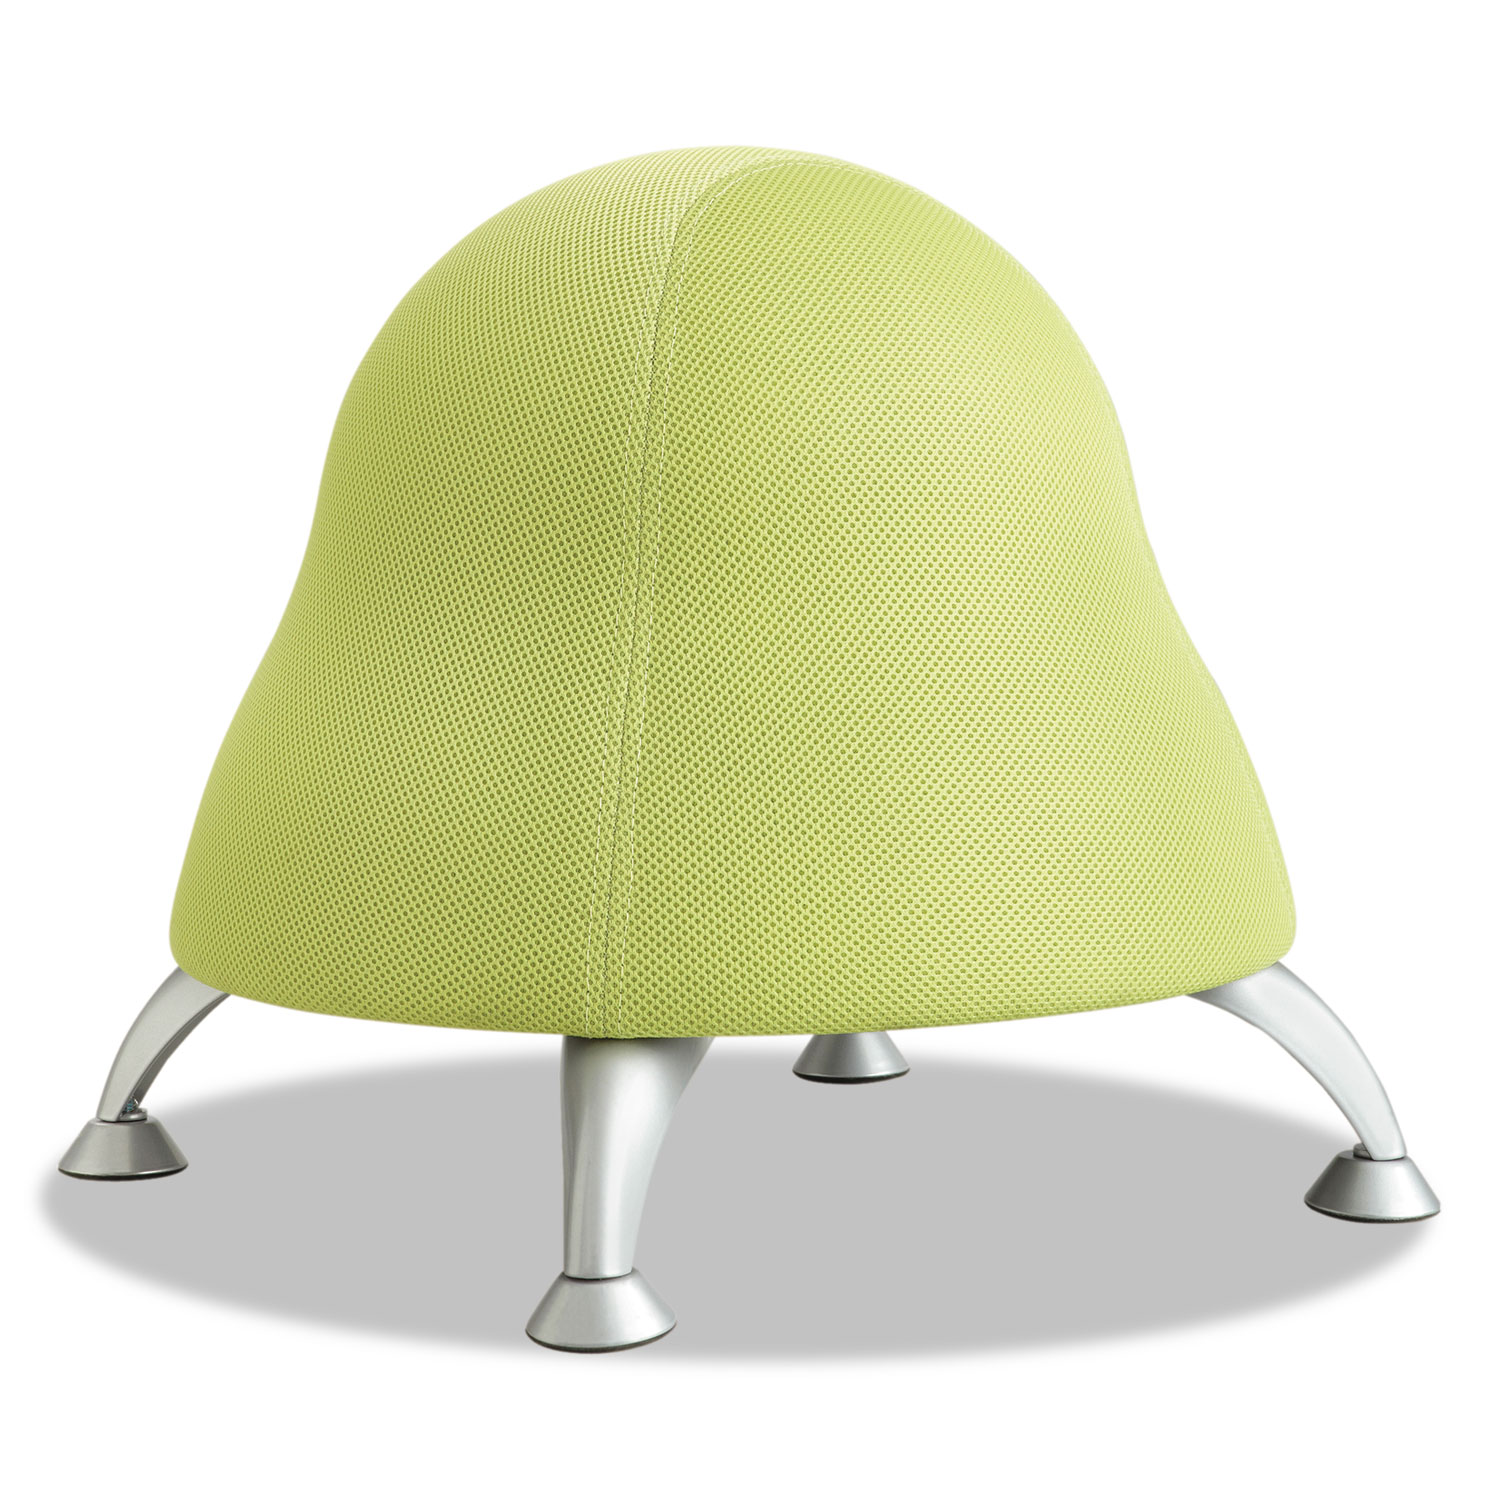 Runtz Ball Chair, 12 Diameter x 17 High, Sour Apple Green